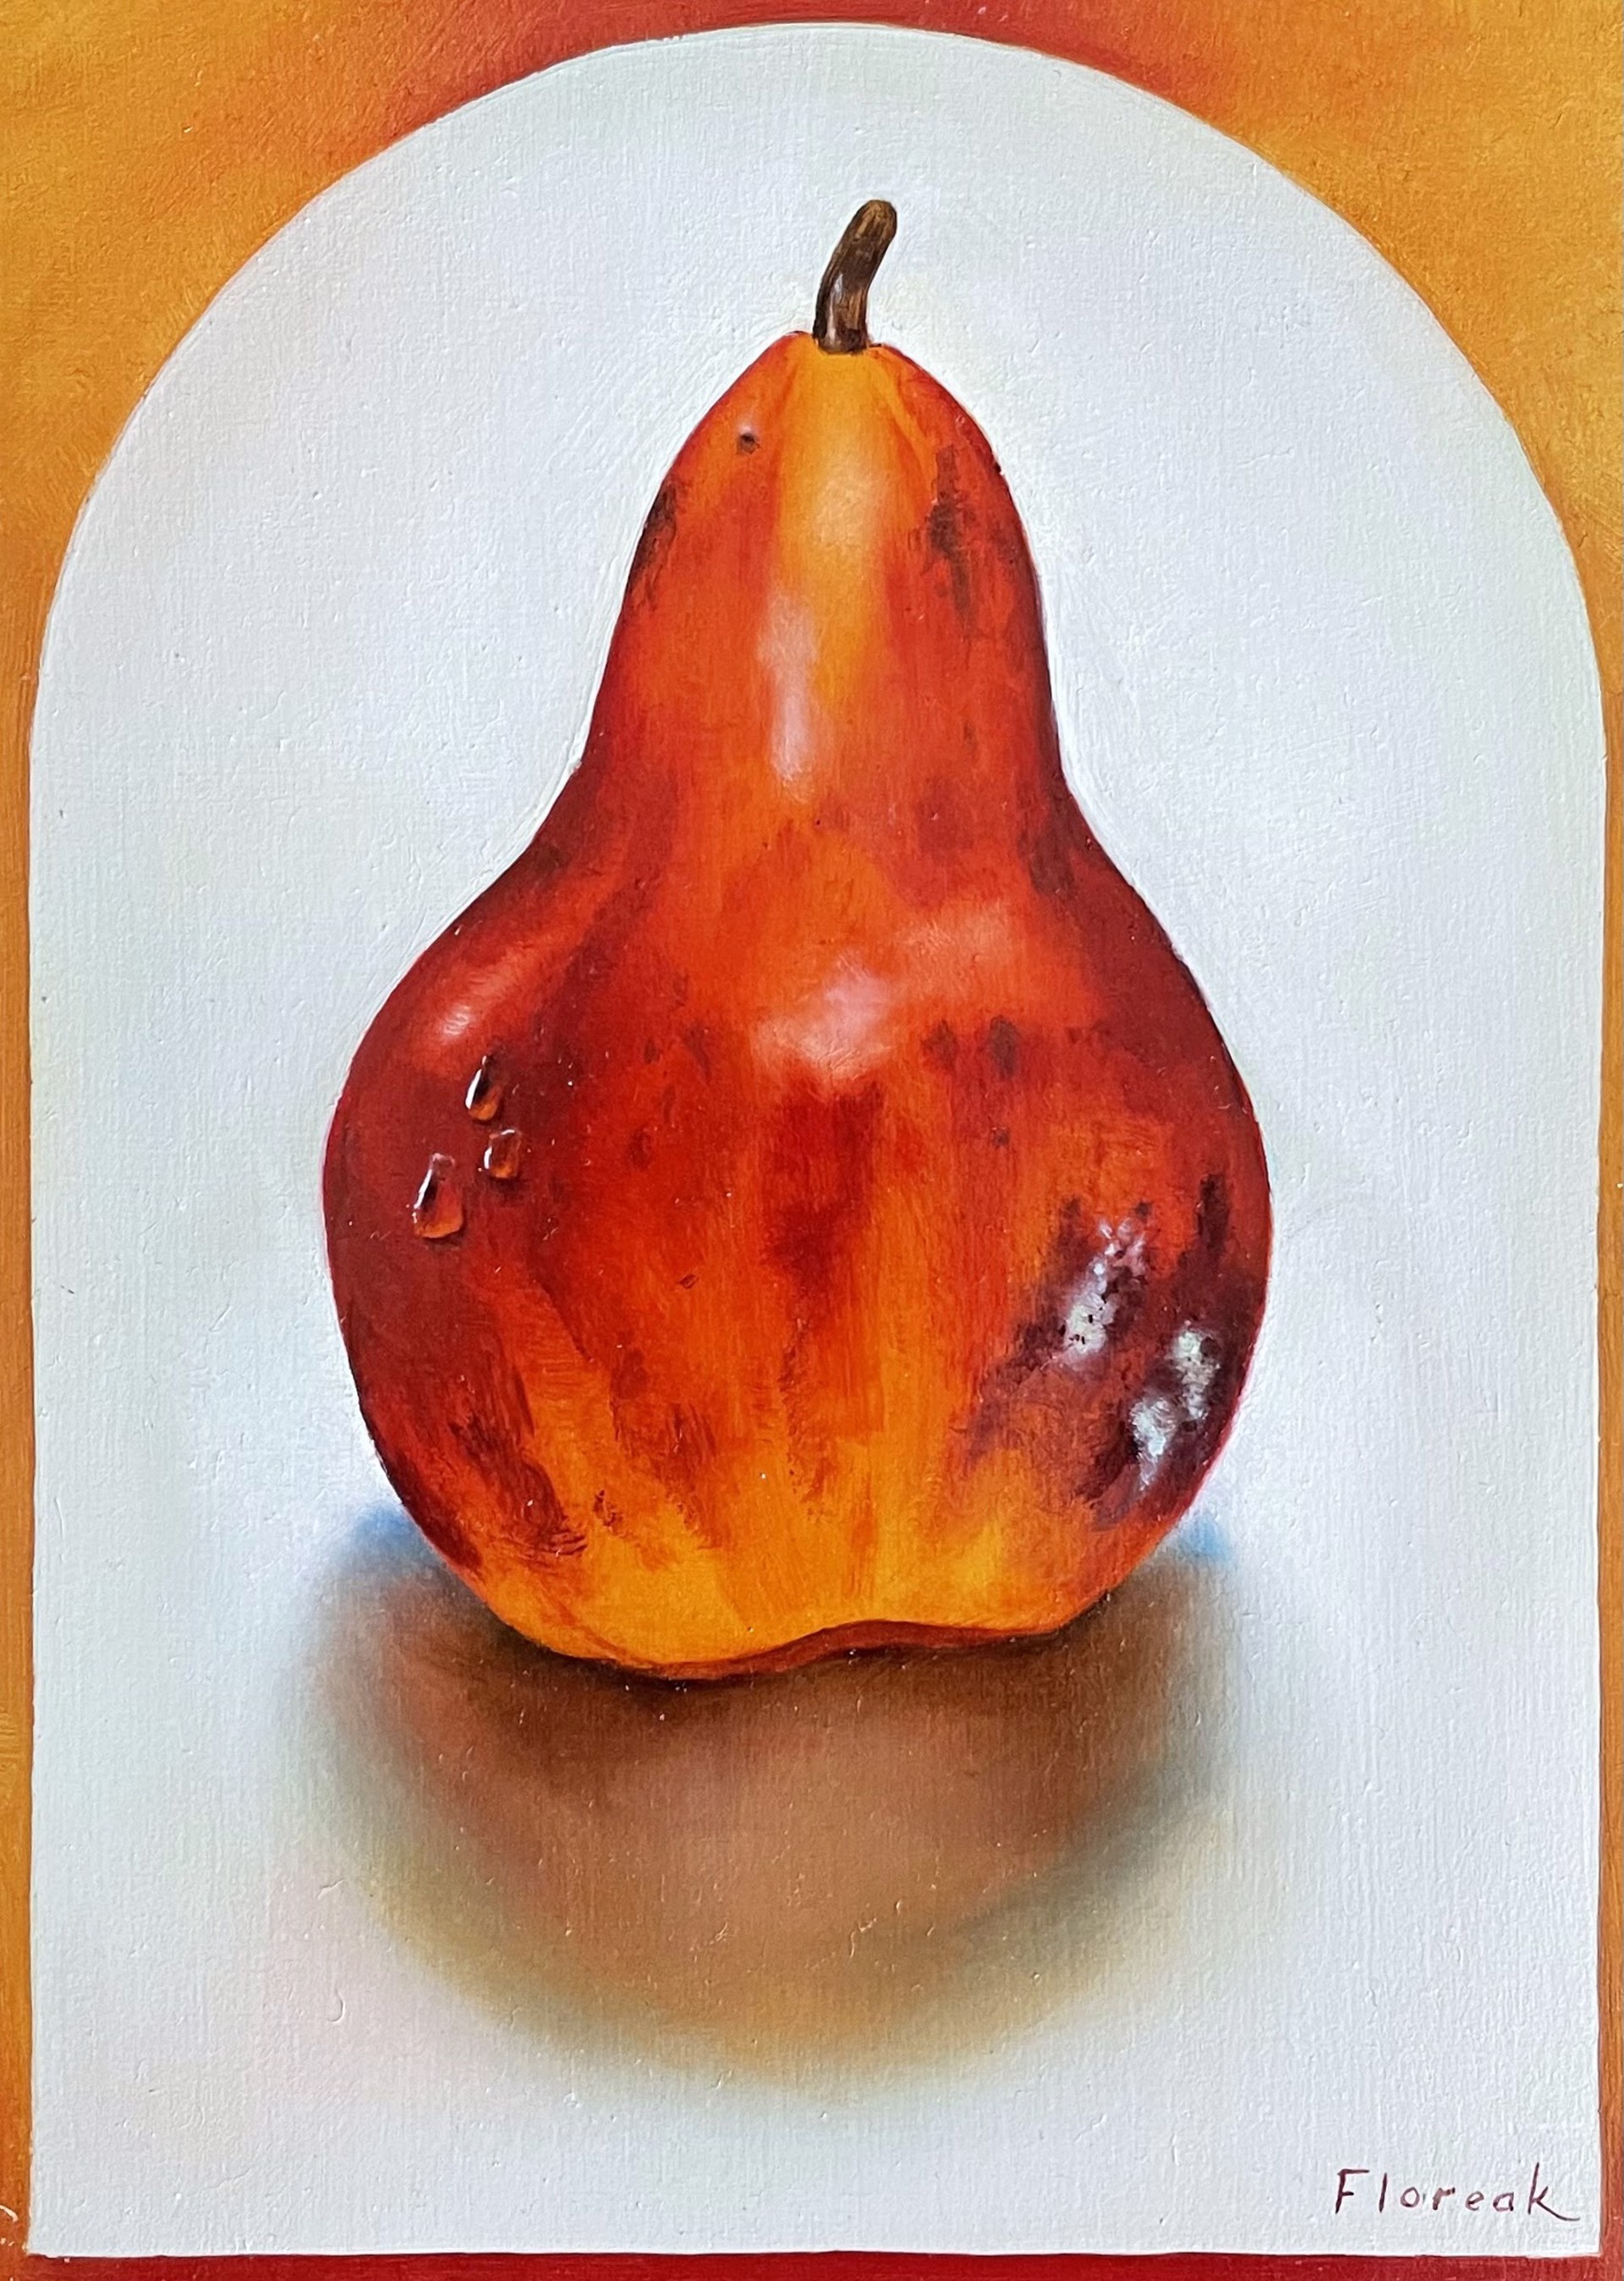 Pear by Ida Floreak